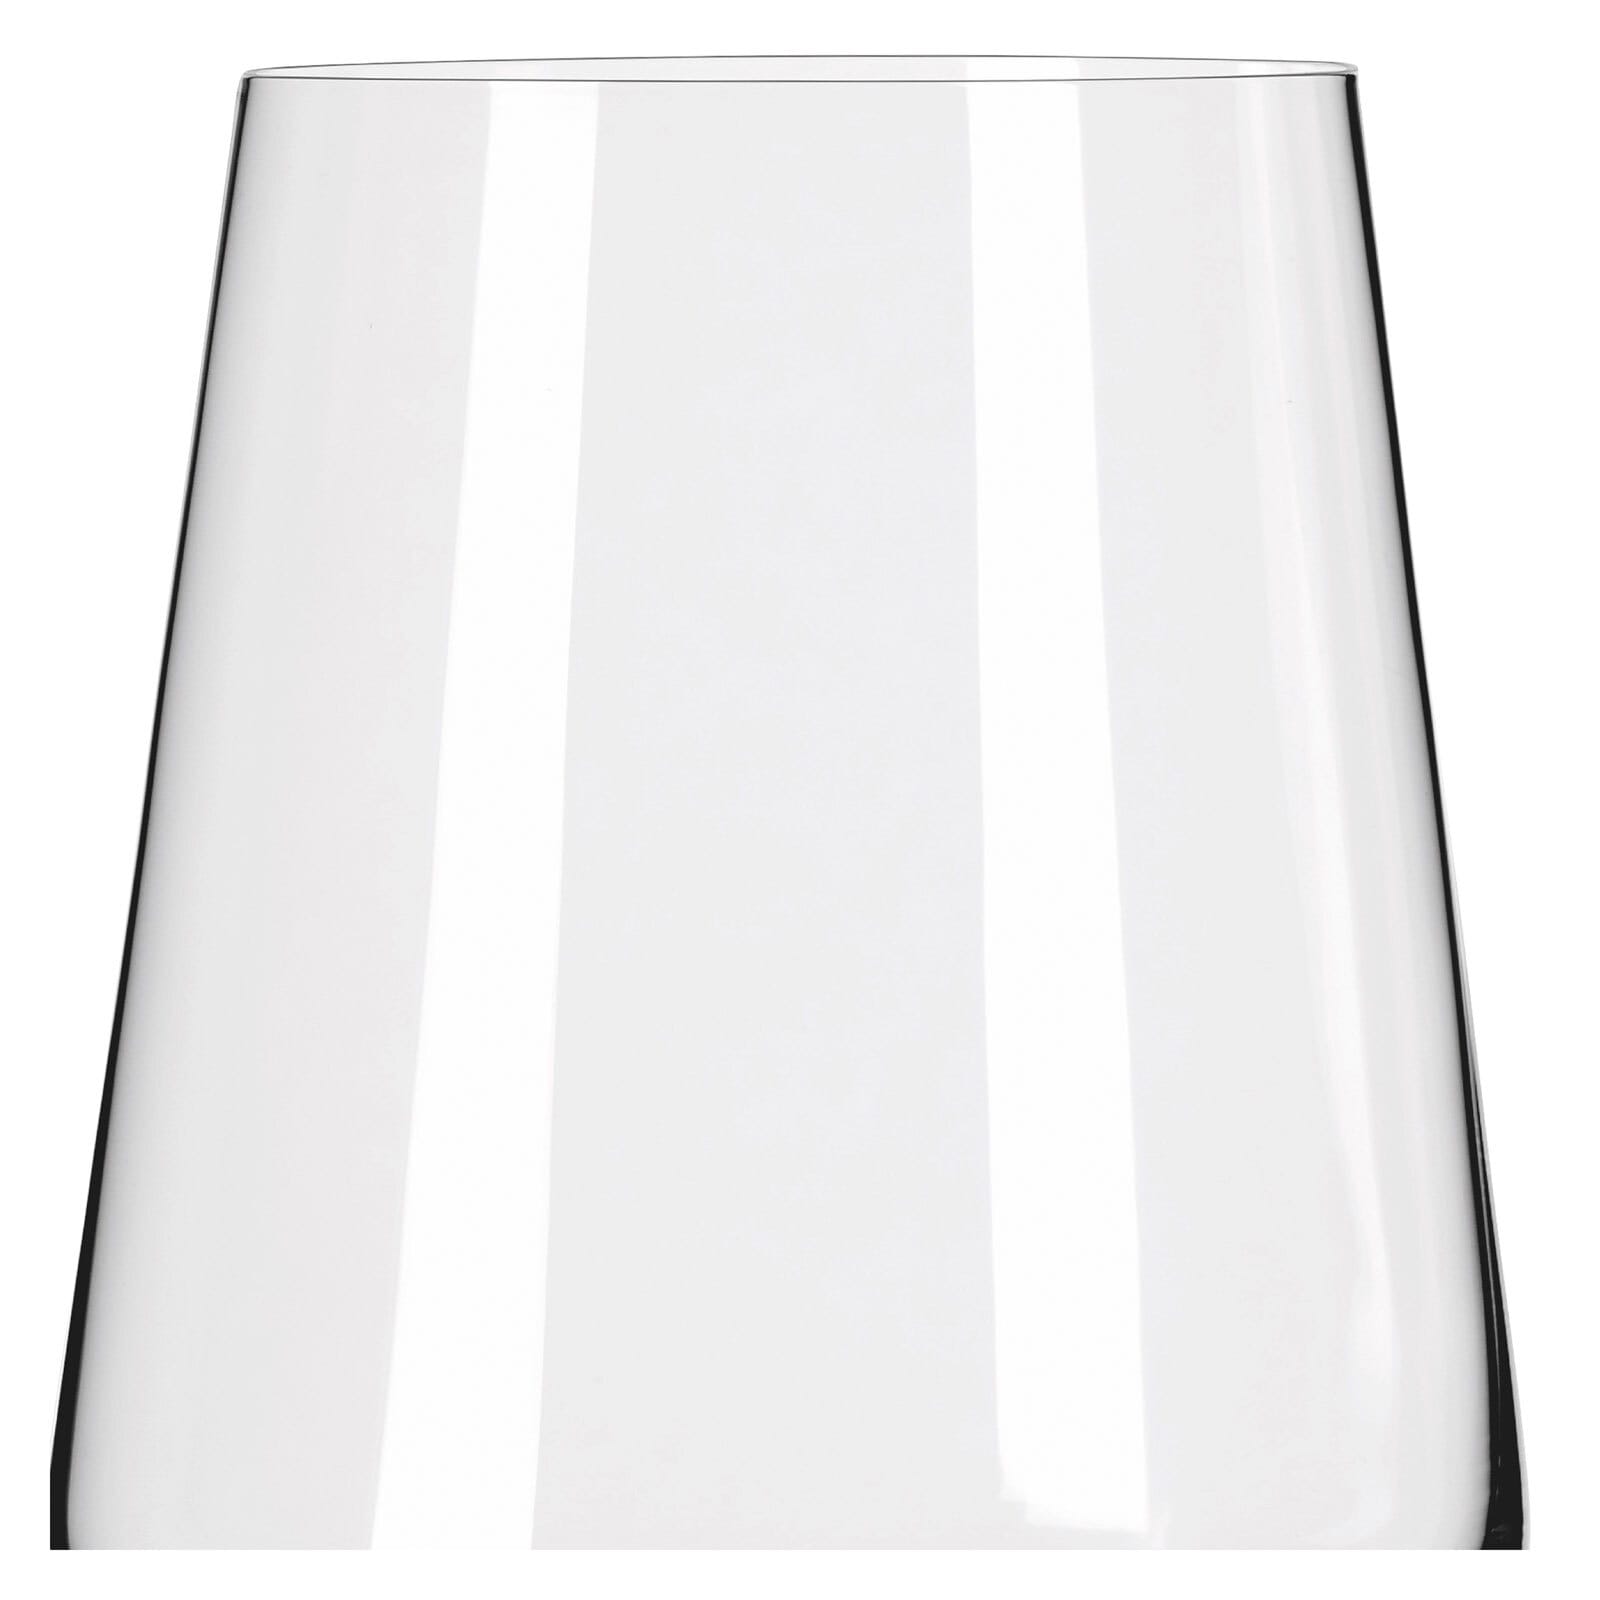 RITZENHOFF Wasser- und Weißweingläser-Set LICHTWEISS 12-teilig Kristallglas